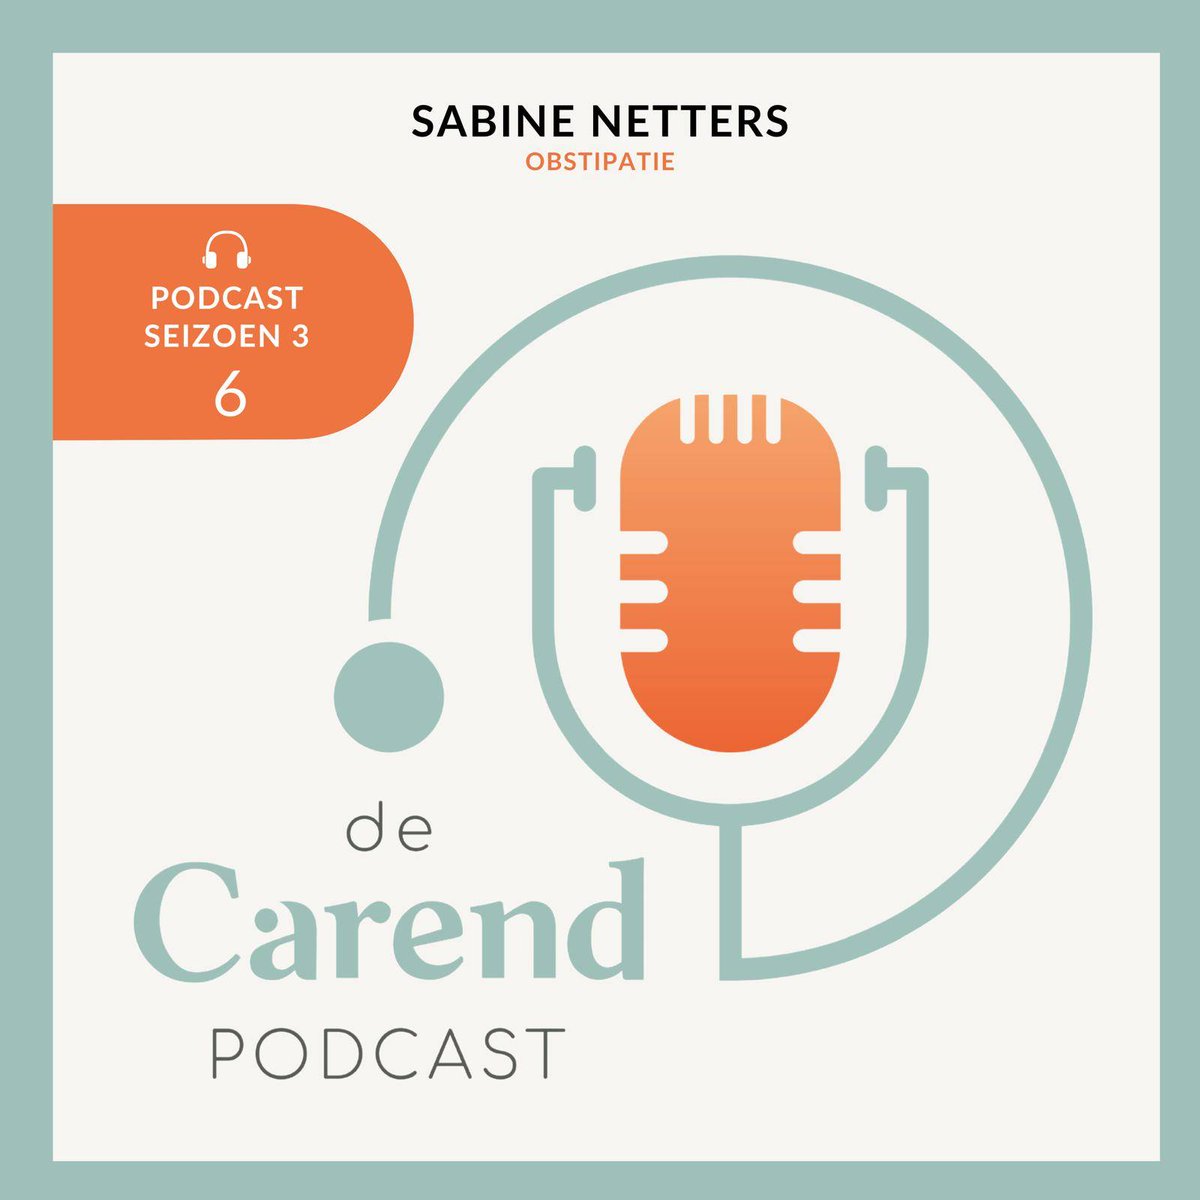 Een nieuwe aflevering van de Carendpodcast! Deze keer gaat Nick Dekker met internist oncoloog Sabine Netters in gesprek over obstipatie, een veelvoorkomende klacht tijdens de palliatieve fase. Hoe ontstaat het en wat kun je eraan doen? 👇 open.spotify.com/episode/760QdB… #NPPZII